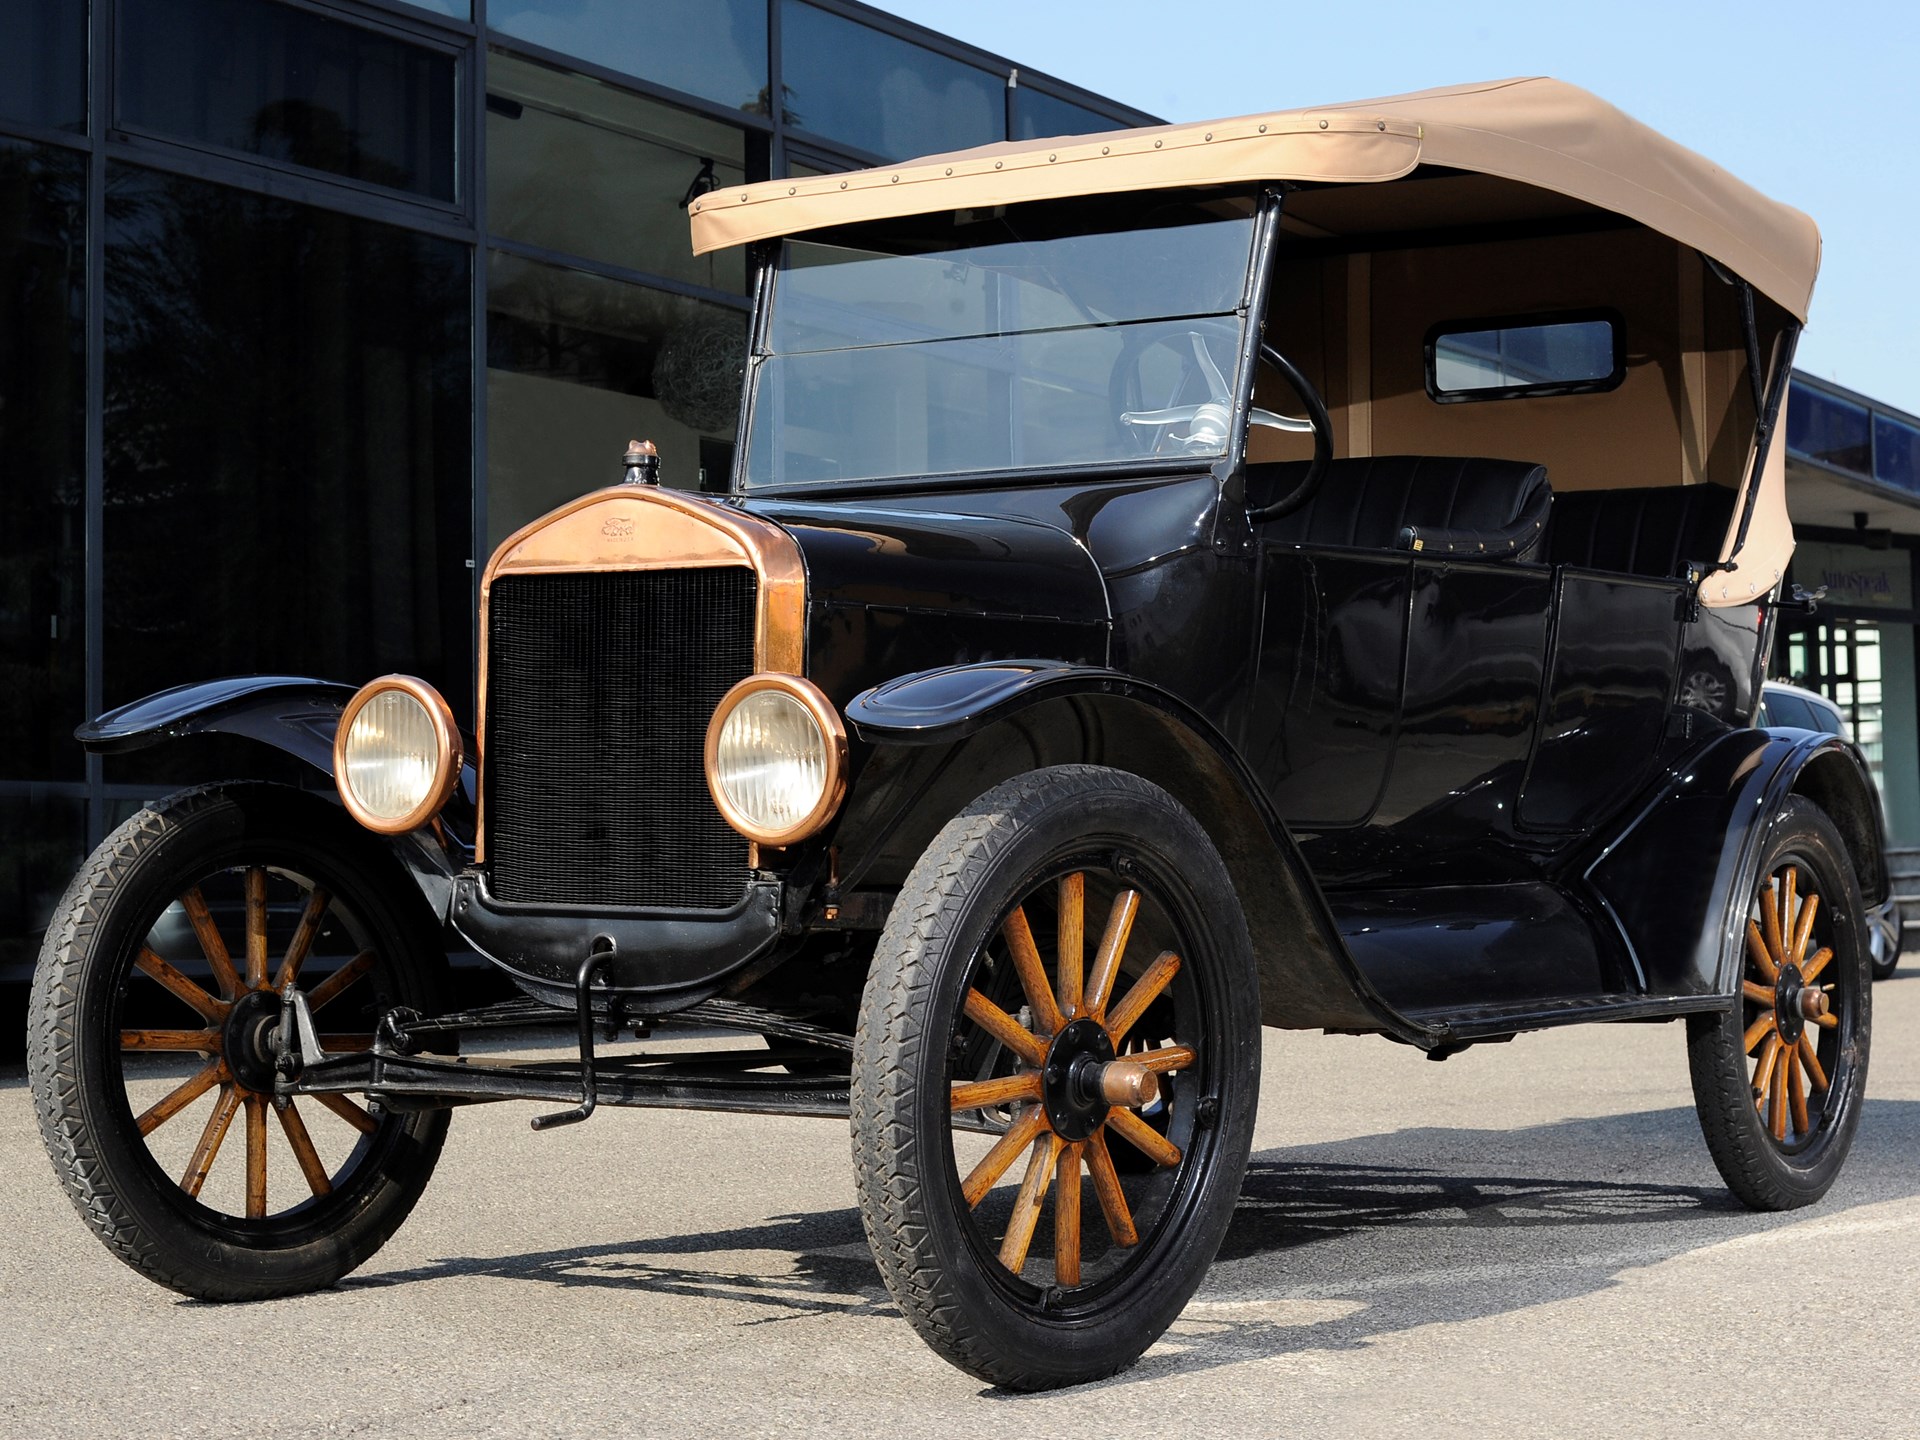 Форд первые машины. Ford model t 1923. Ford model t 1908 и 1927. Форд модель т 1908 Лиззи.